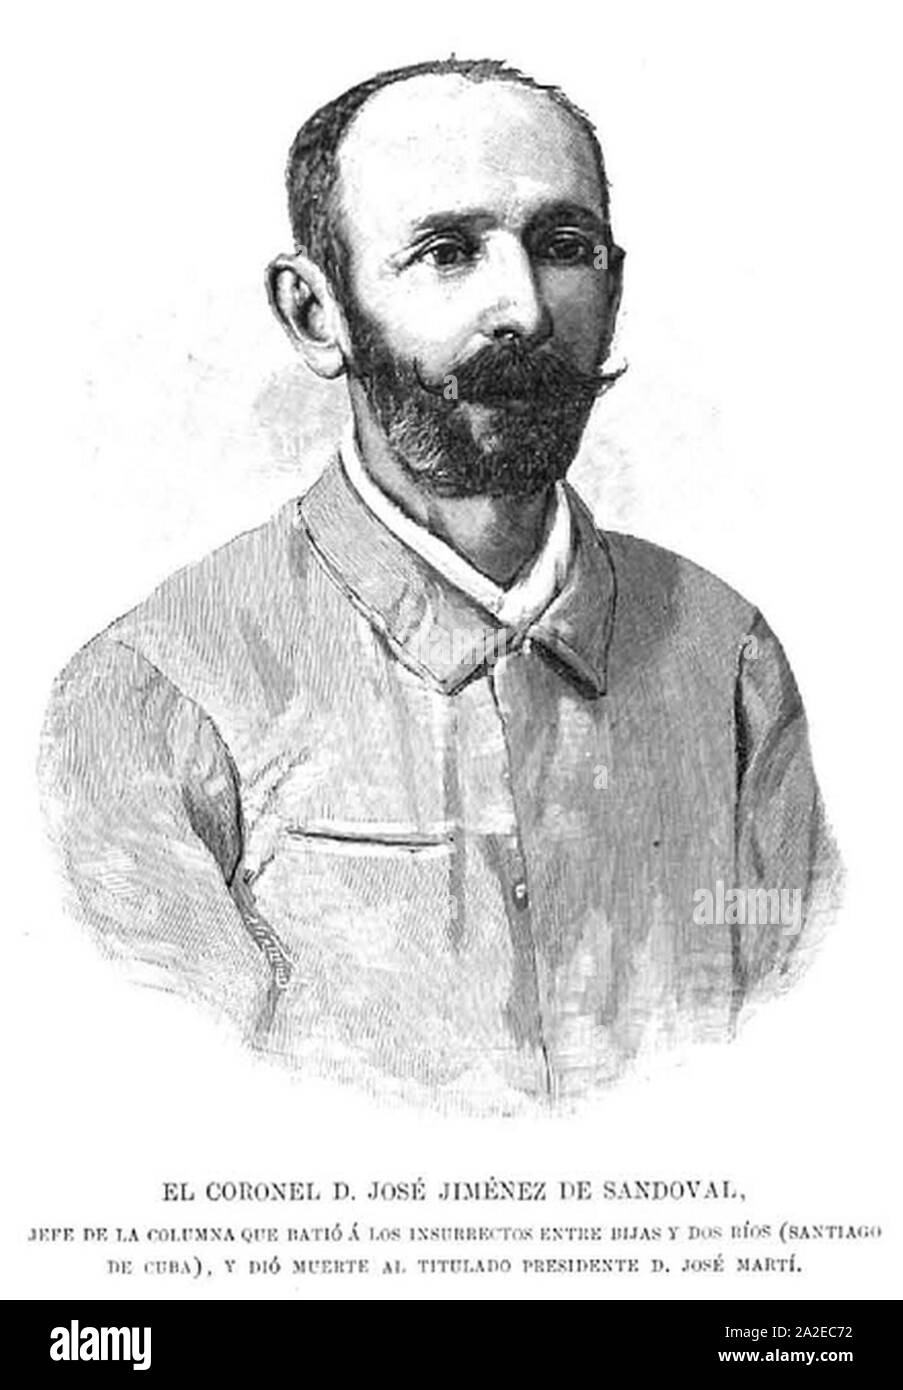 El coronel José Jiménez de Sandoval, en La Ilustración Española y Americana. Stock Photo